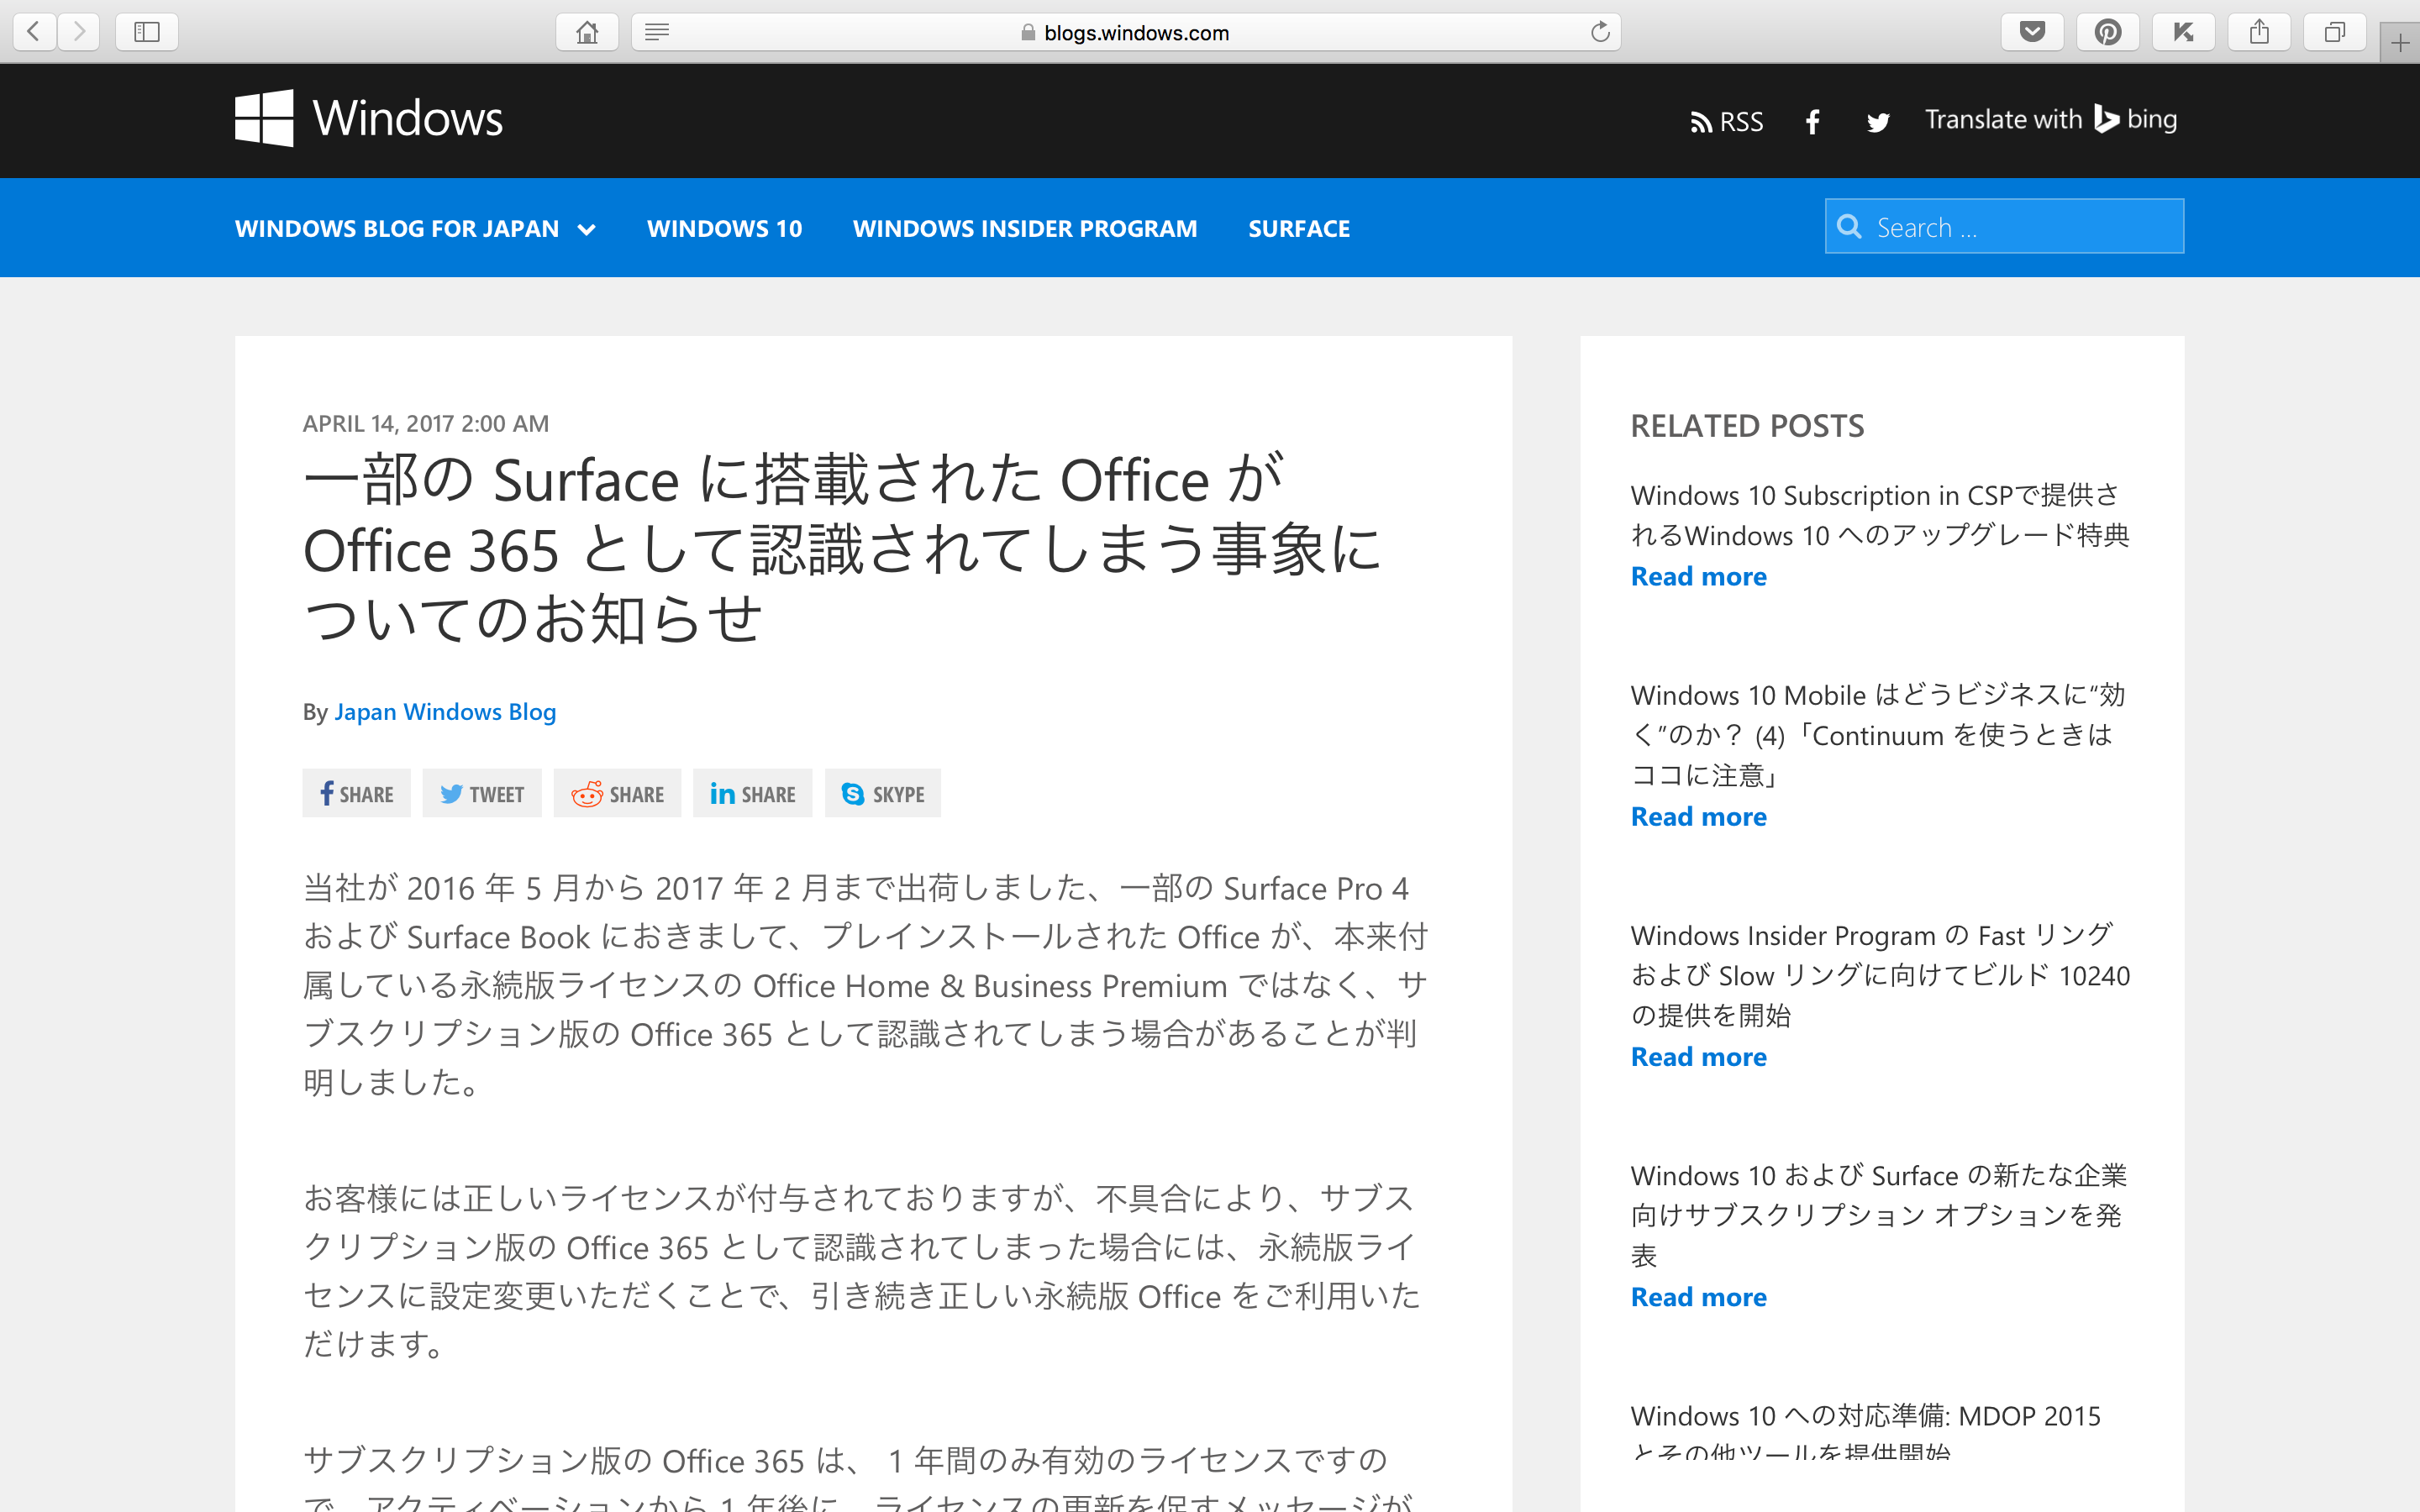 一部の Surface に搭載された Office が Office 365 として認識されてしまう事象についてのお知らせ